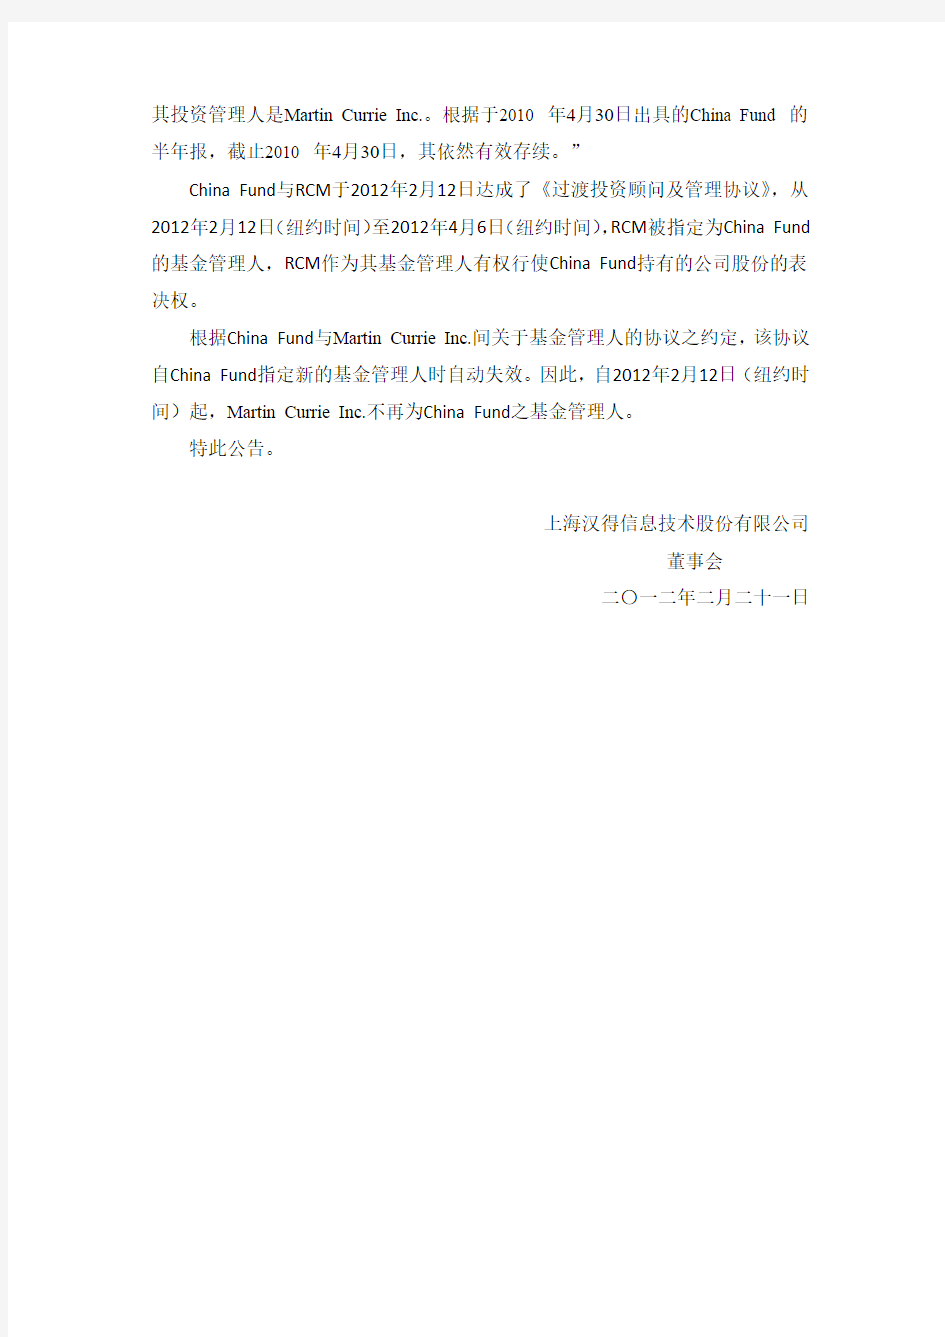 上海汉得信息技术股份有限公司